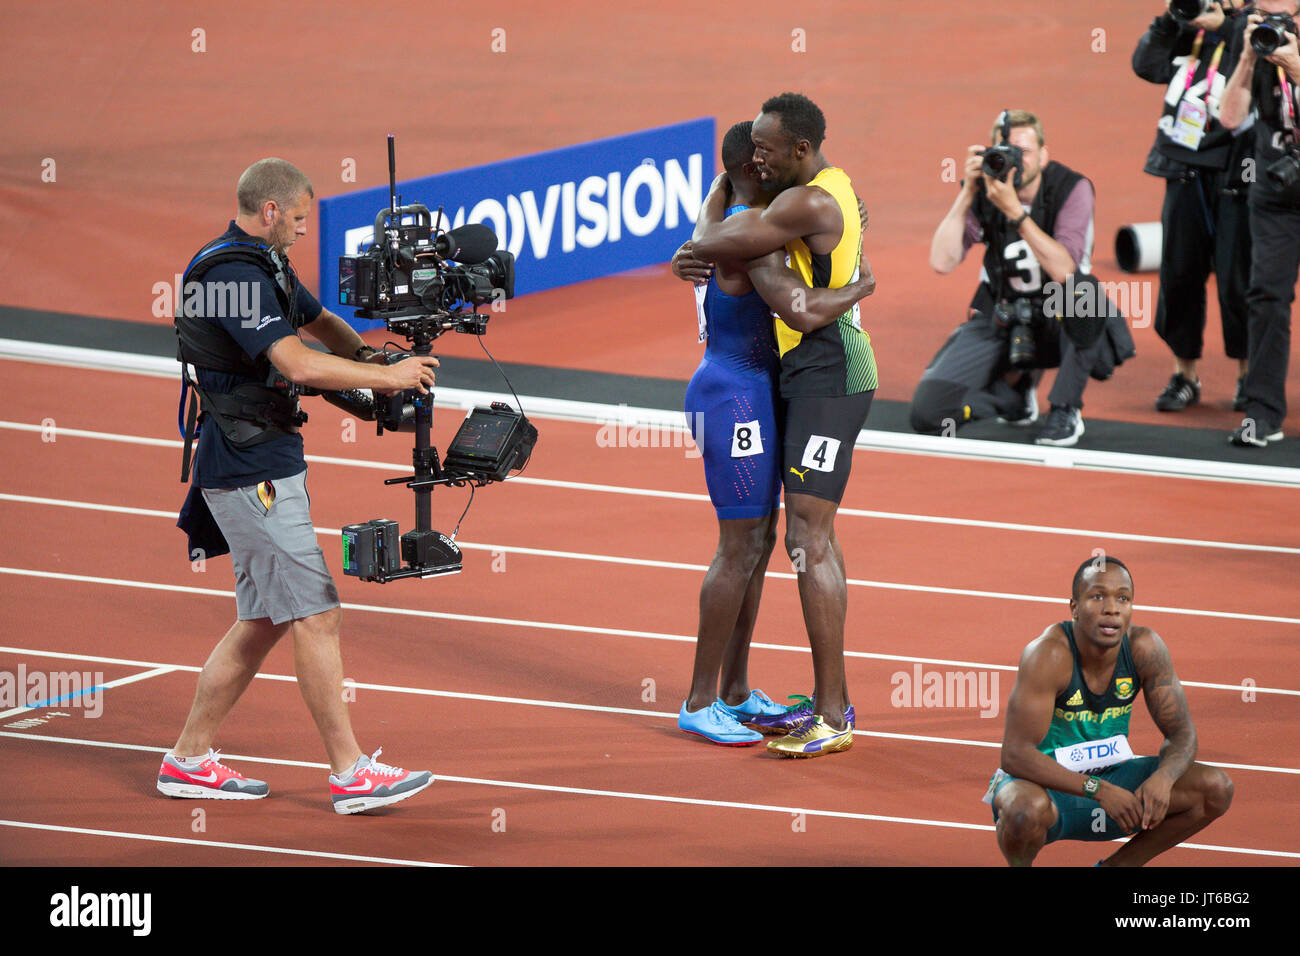 Londres, ANGLETERRE - 05 août : Usain Bolt et Justin Gatlin (bleu en haut) après la finale du 100 m hommes au cours de la deuxième journée de la 17e Championnats du monde d'athlétisme IAAF Londres 2017 au stade de Londres le 5 août 2017 à Londres, Royaume-Uni.Justin Gatlin des États-Unis a gagné la course. Banque D'Images